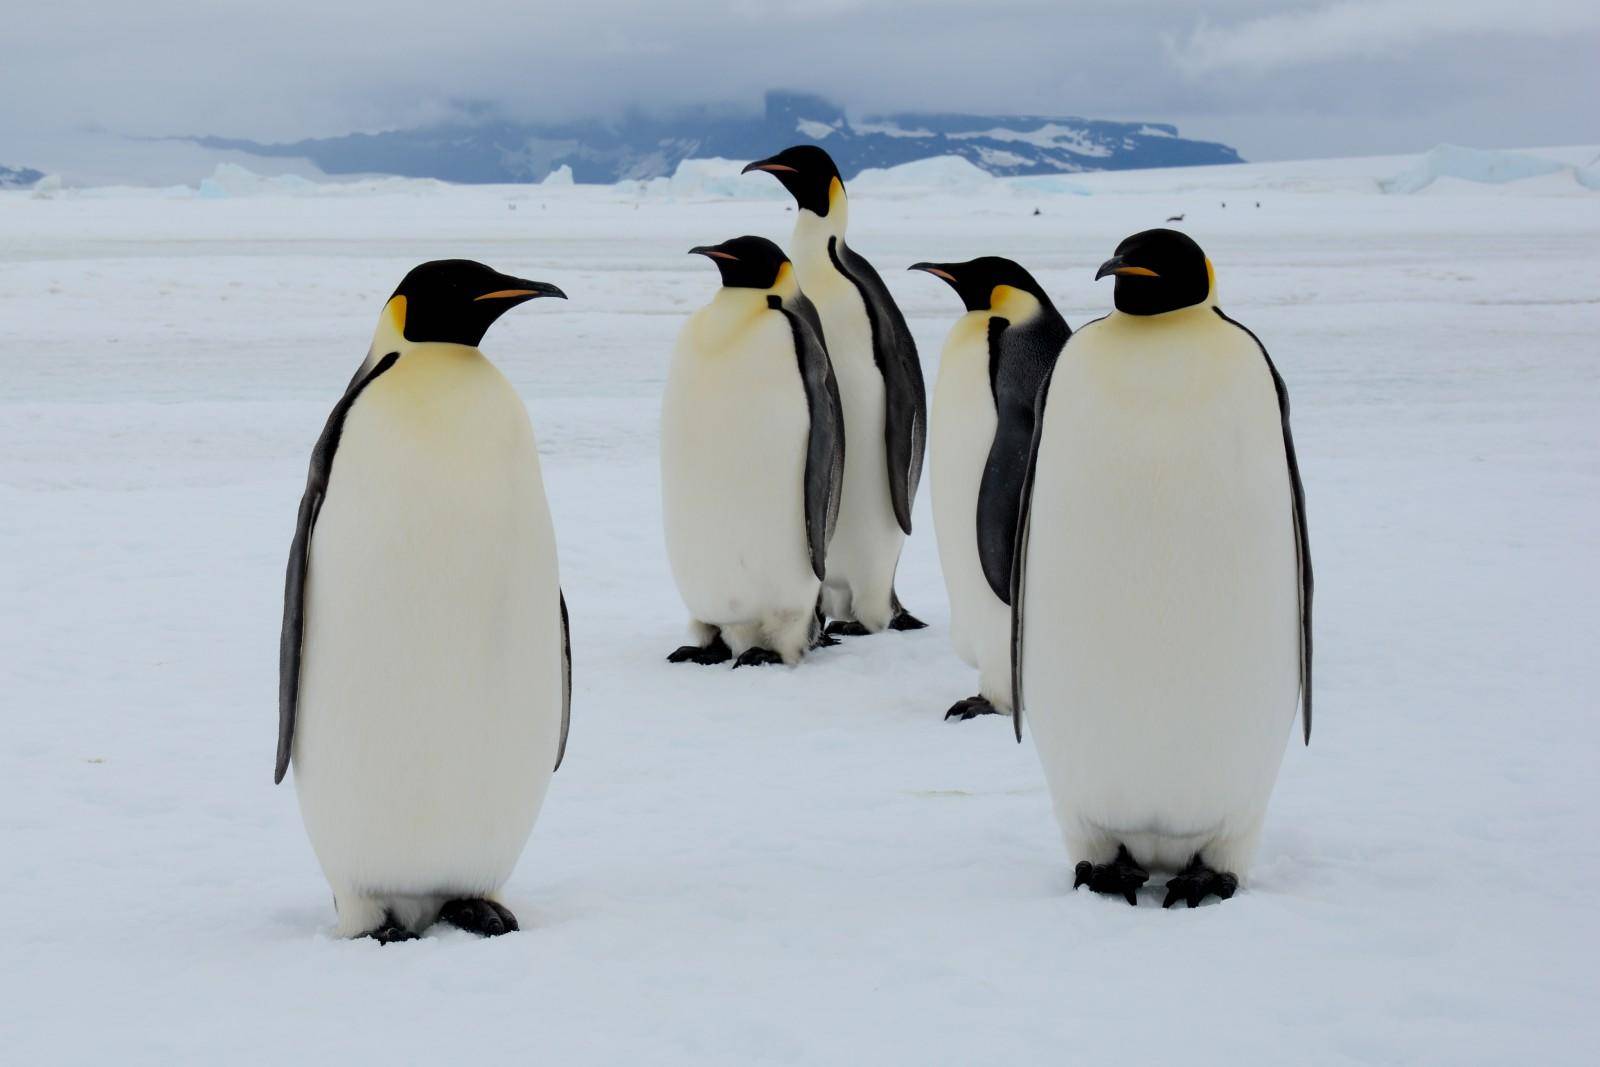 如果把企鹅运到北极去企鹅能生存下去吗